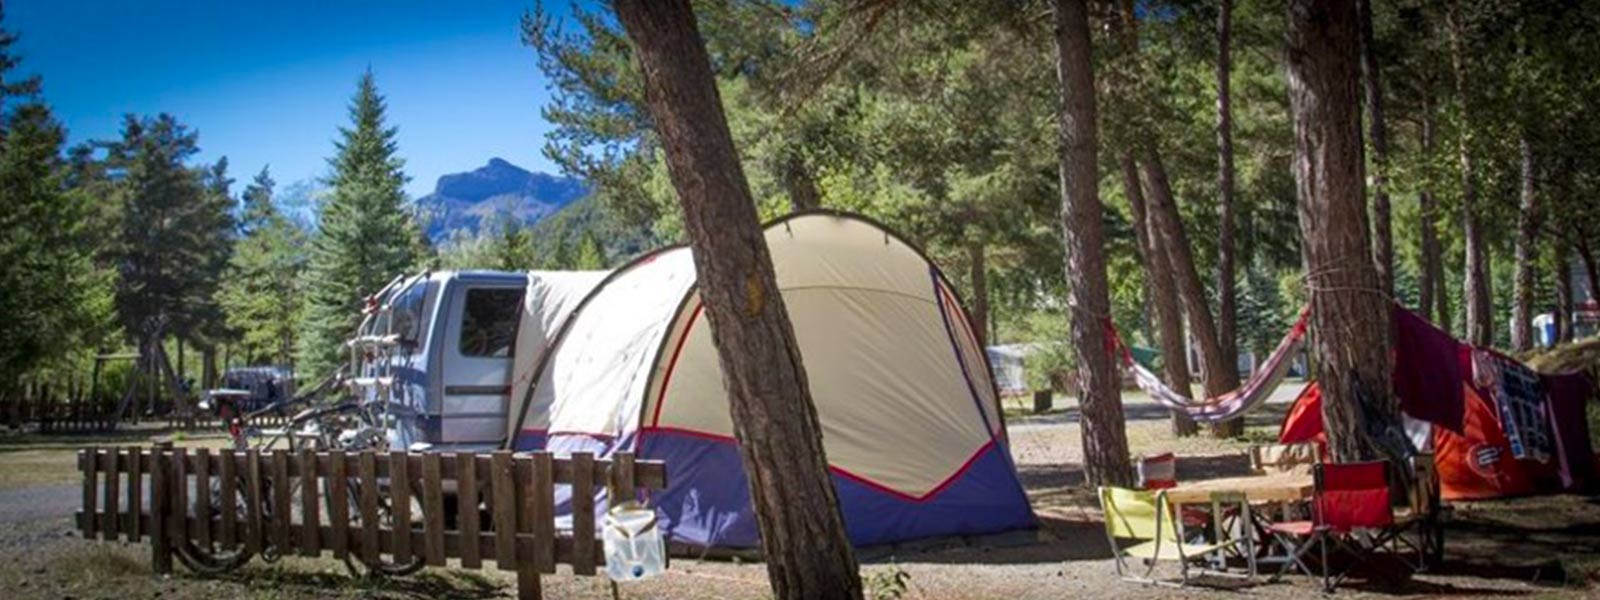 camping pour caravane en provence